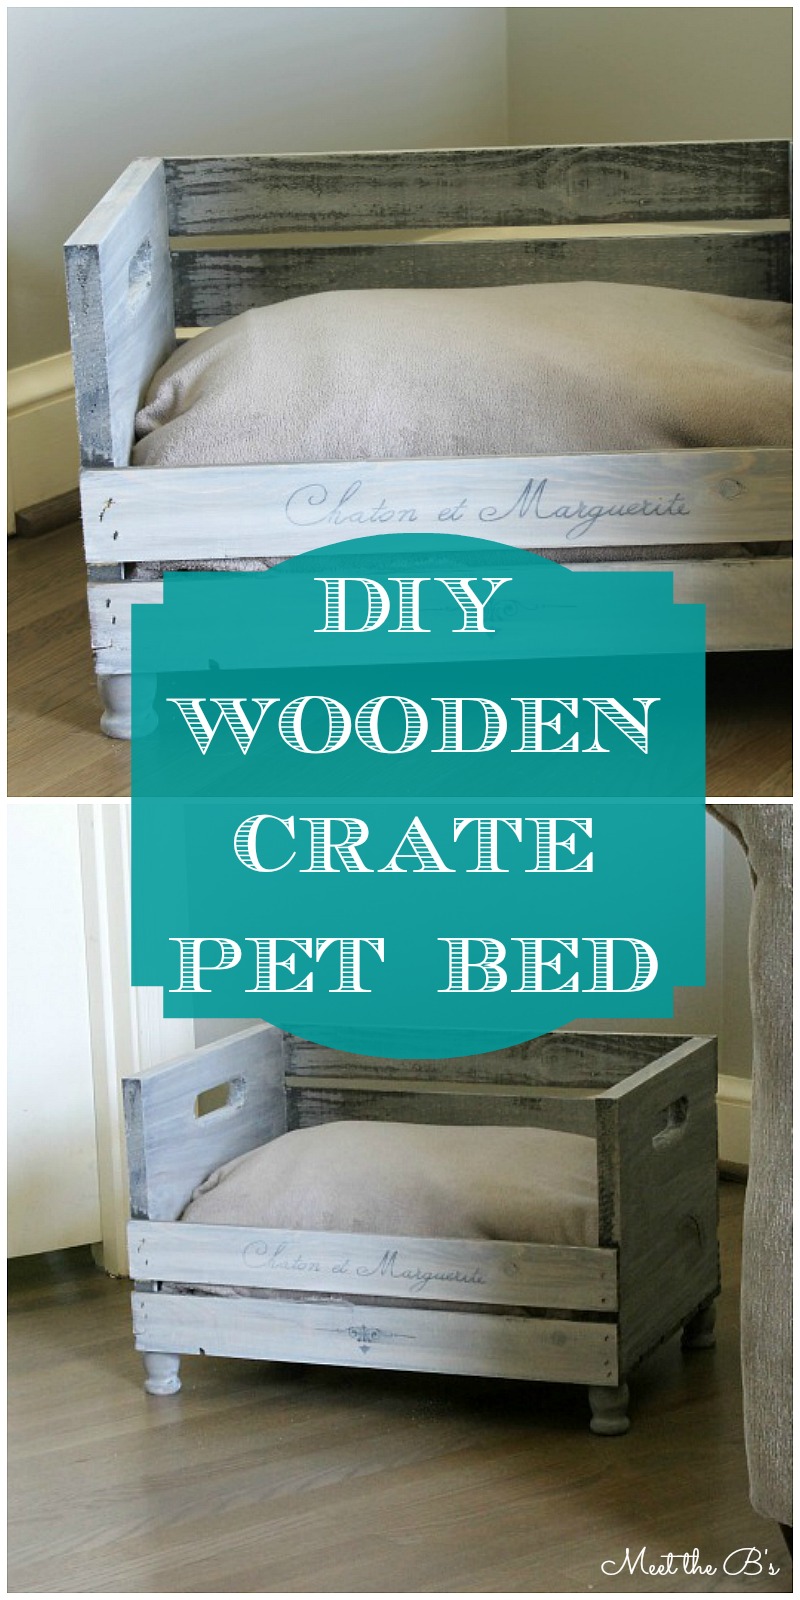 DIY Wooden Crate Pet Bed